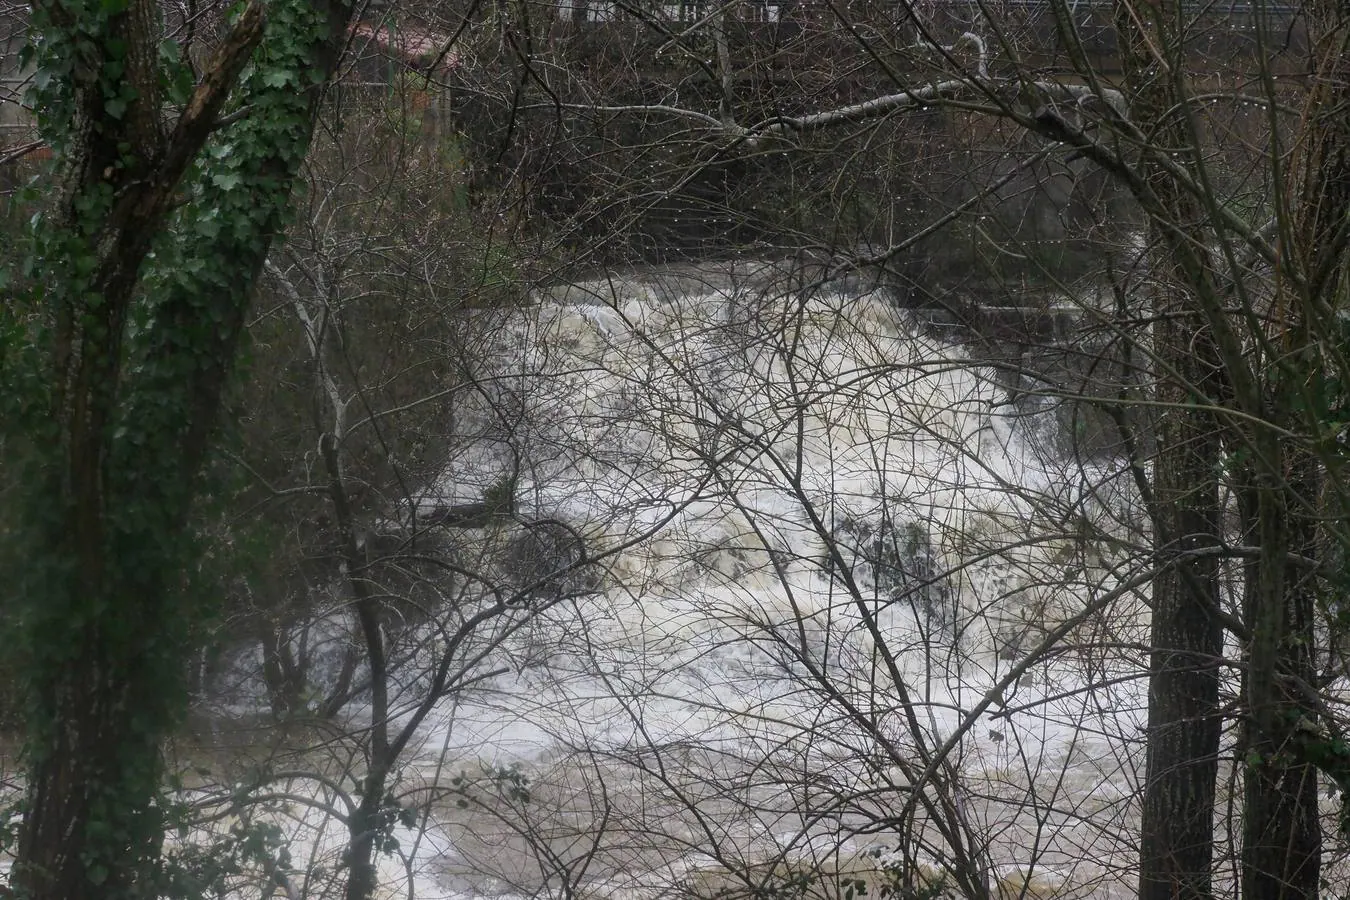 Fotos: El río Miera sigue en valores normales, a pesar de la fuerza que ha tomado su caudal